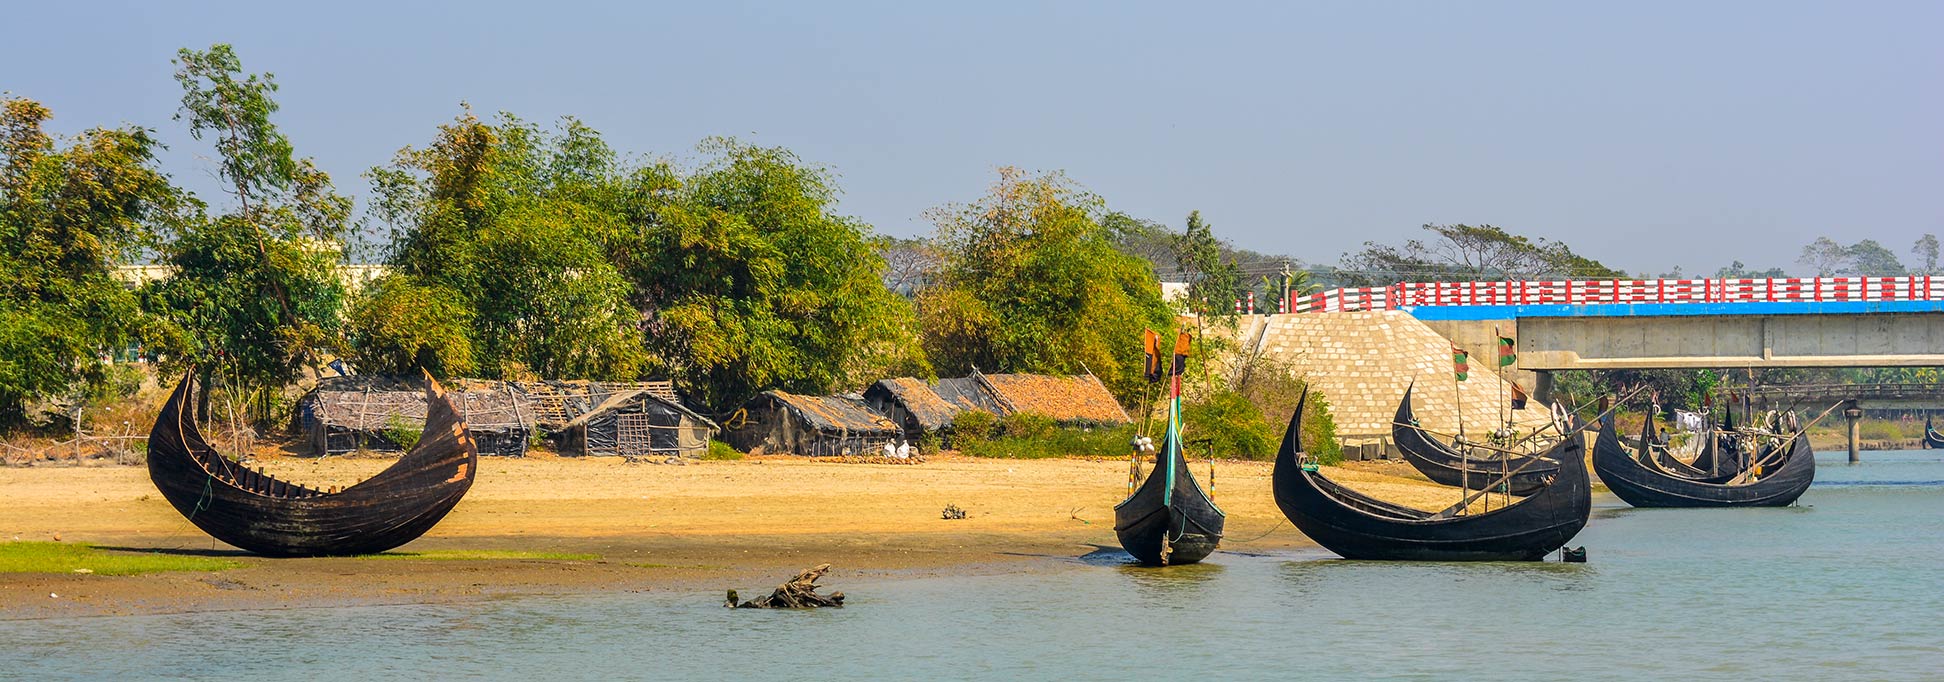 Fishing boats at Inani Beach of Cox's Bazar